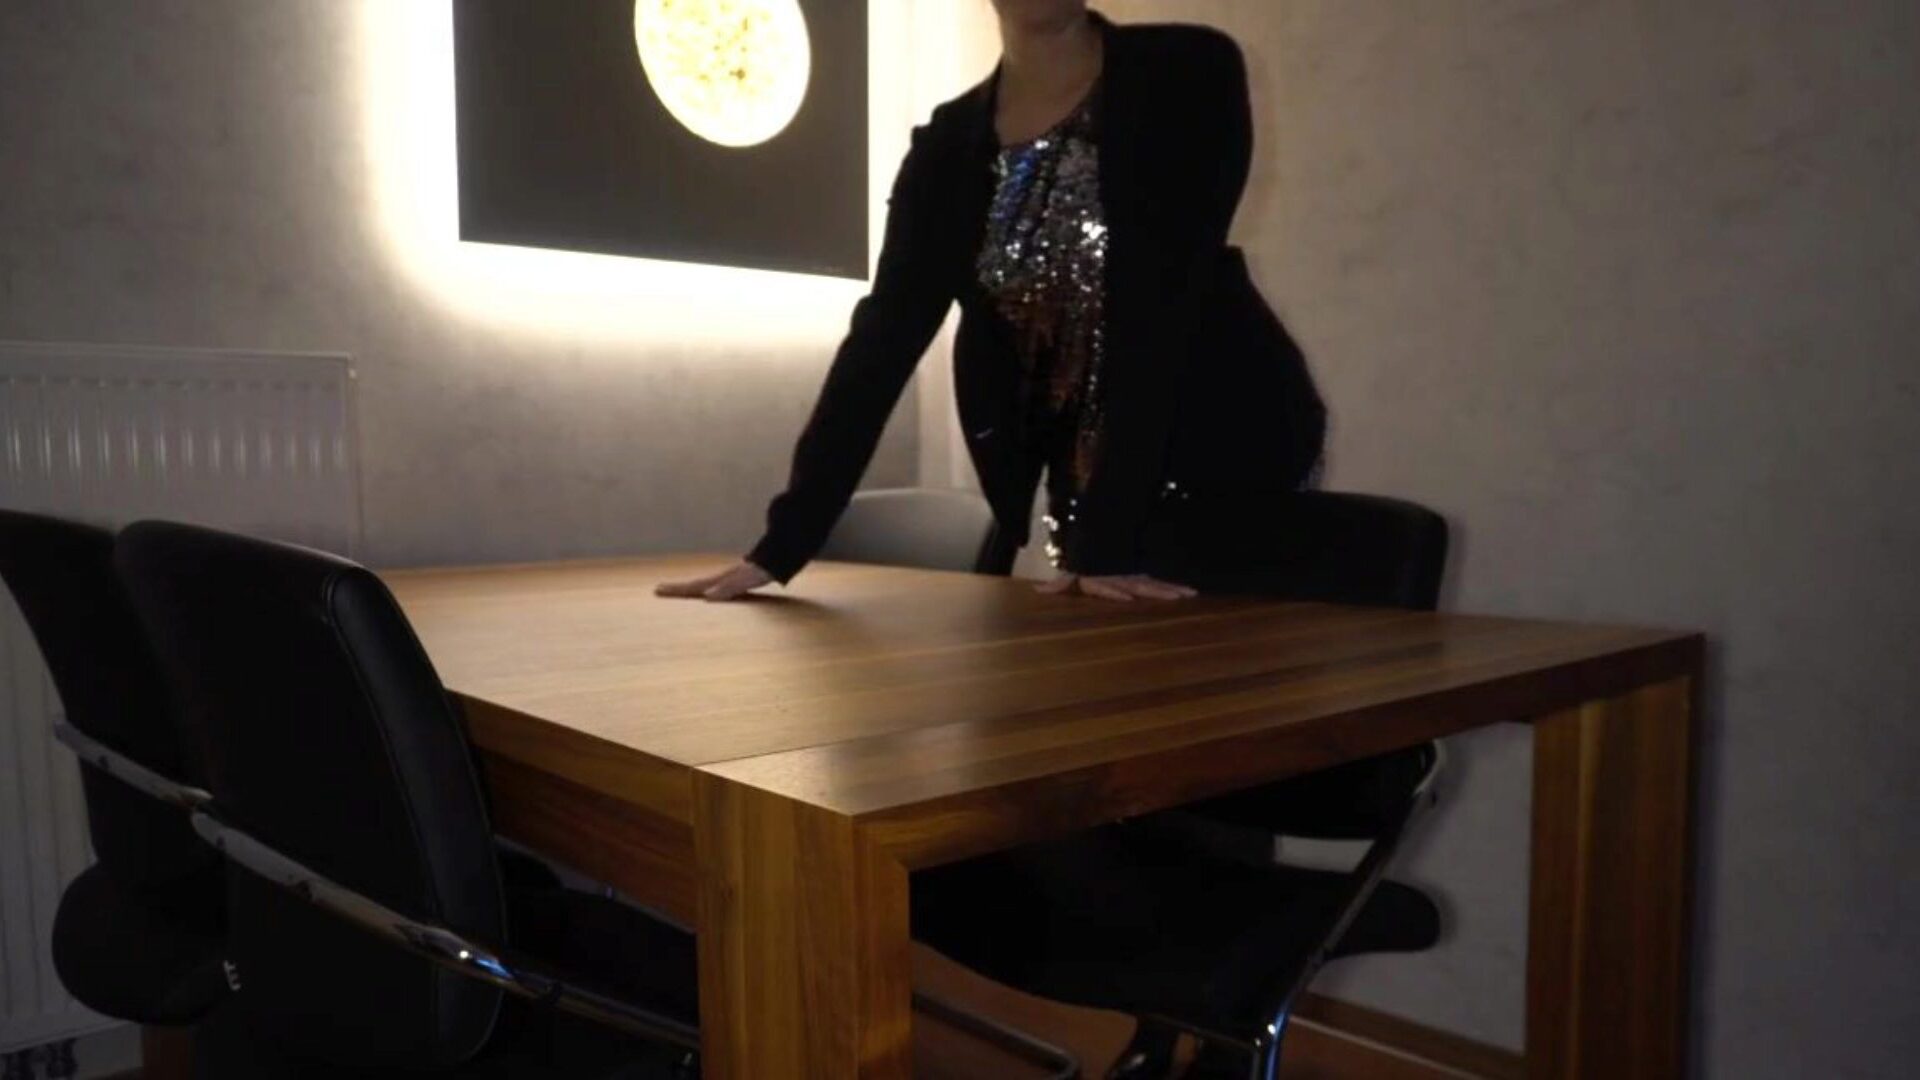 baas neukt secretaresse anaal op tafel ... kijk hoe baas secretaresse anaal neukt op tafel